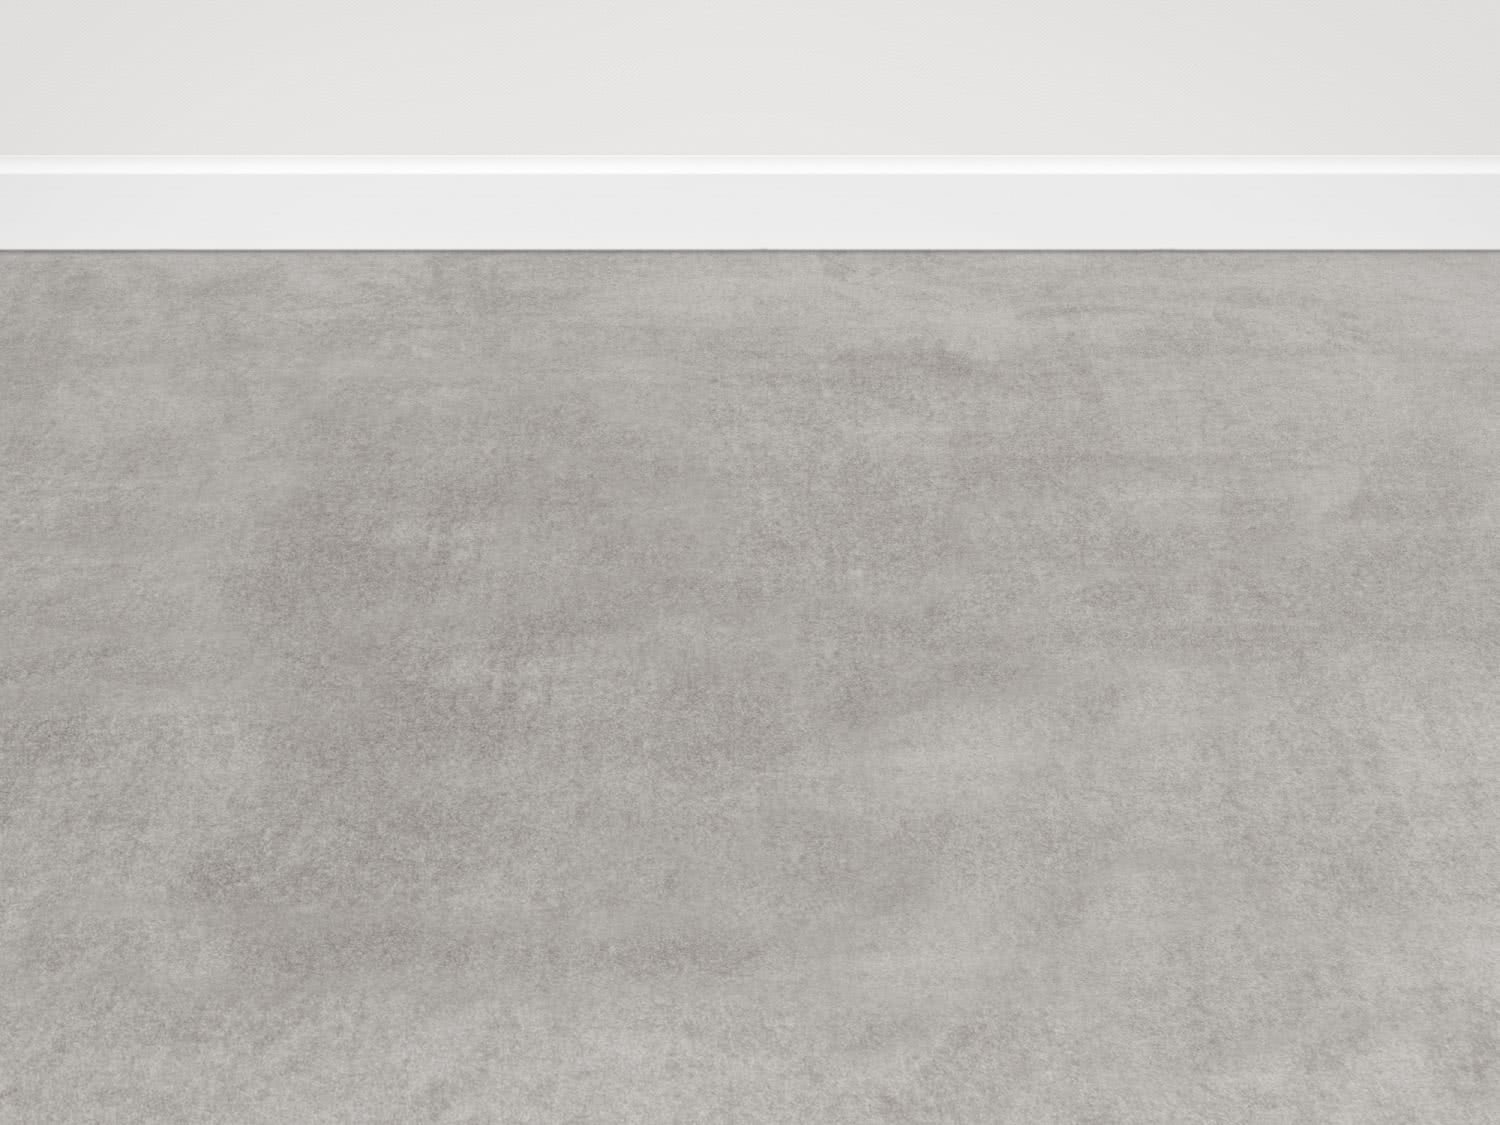 Vorwerk Passion hellgrau - Teppichboden 400 cm breit